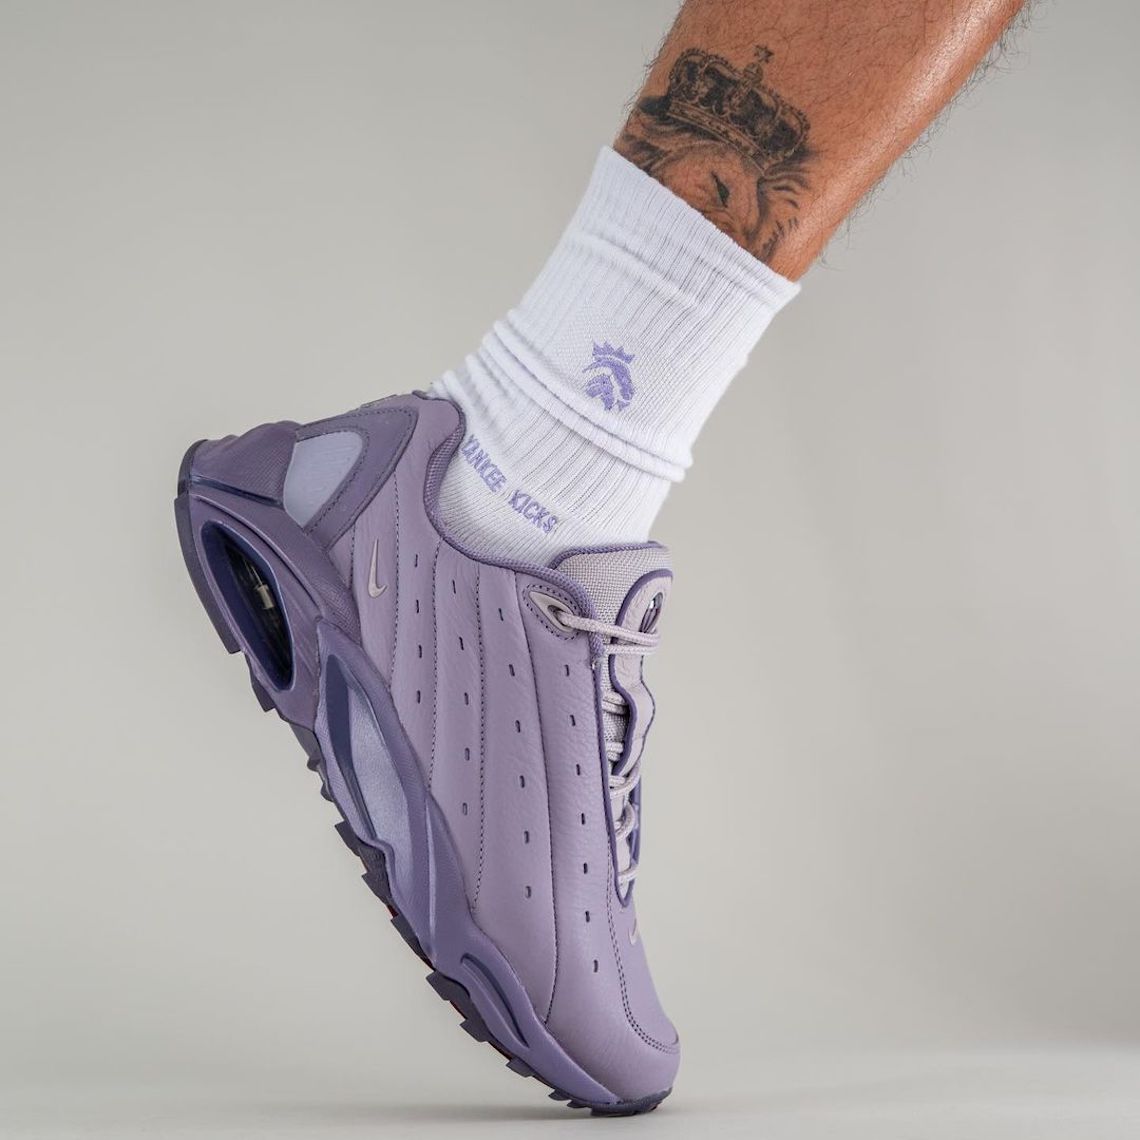 NOCTA Nike Hot Step Air Terra Purple DH4692 500 1